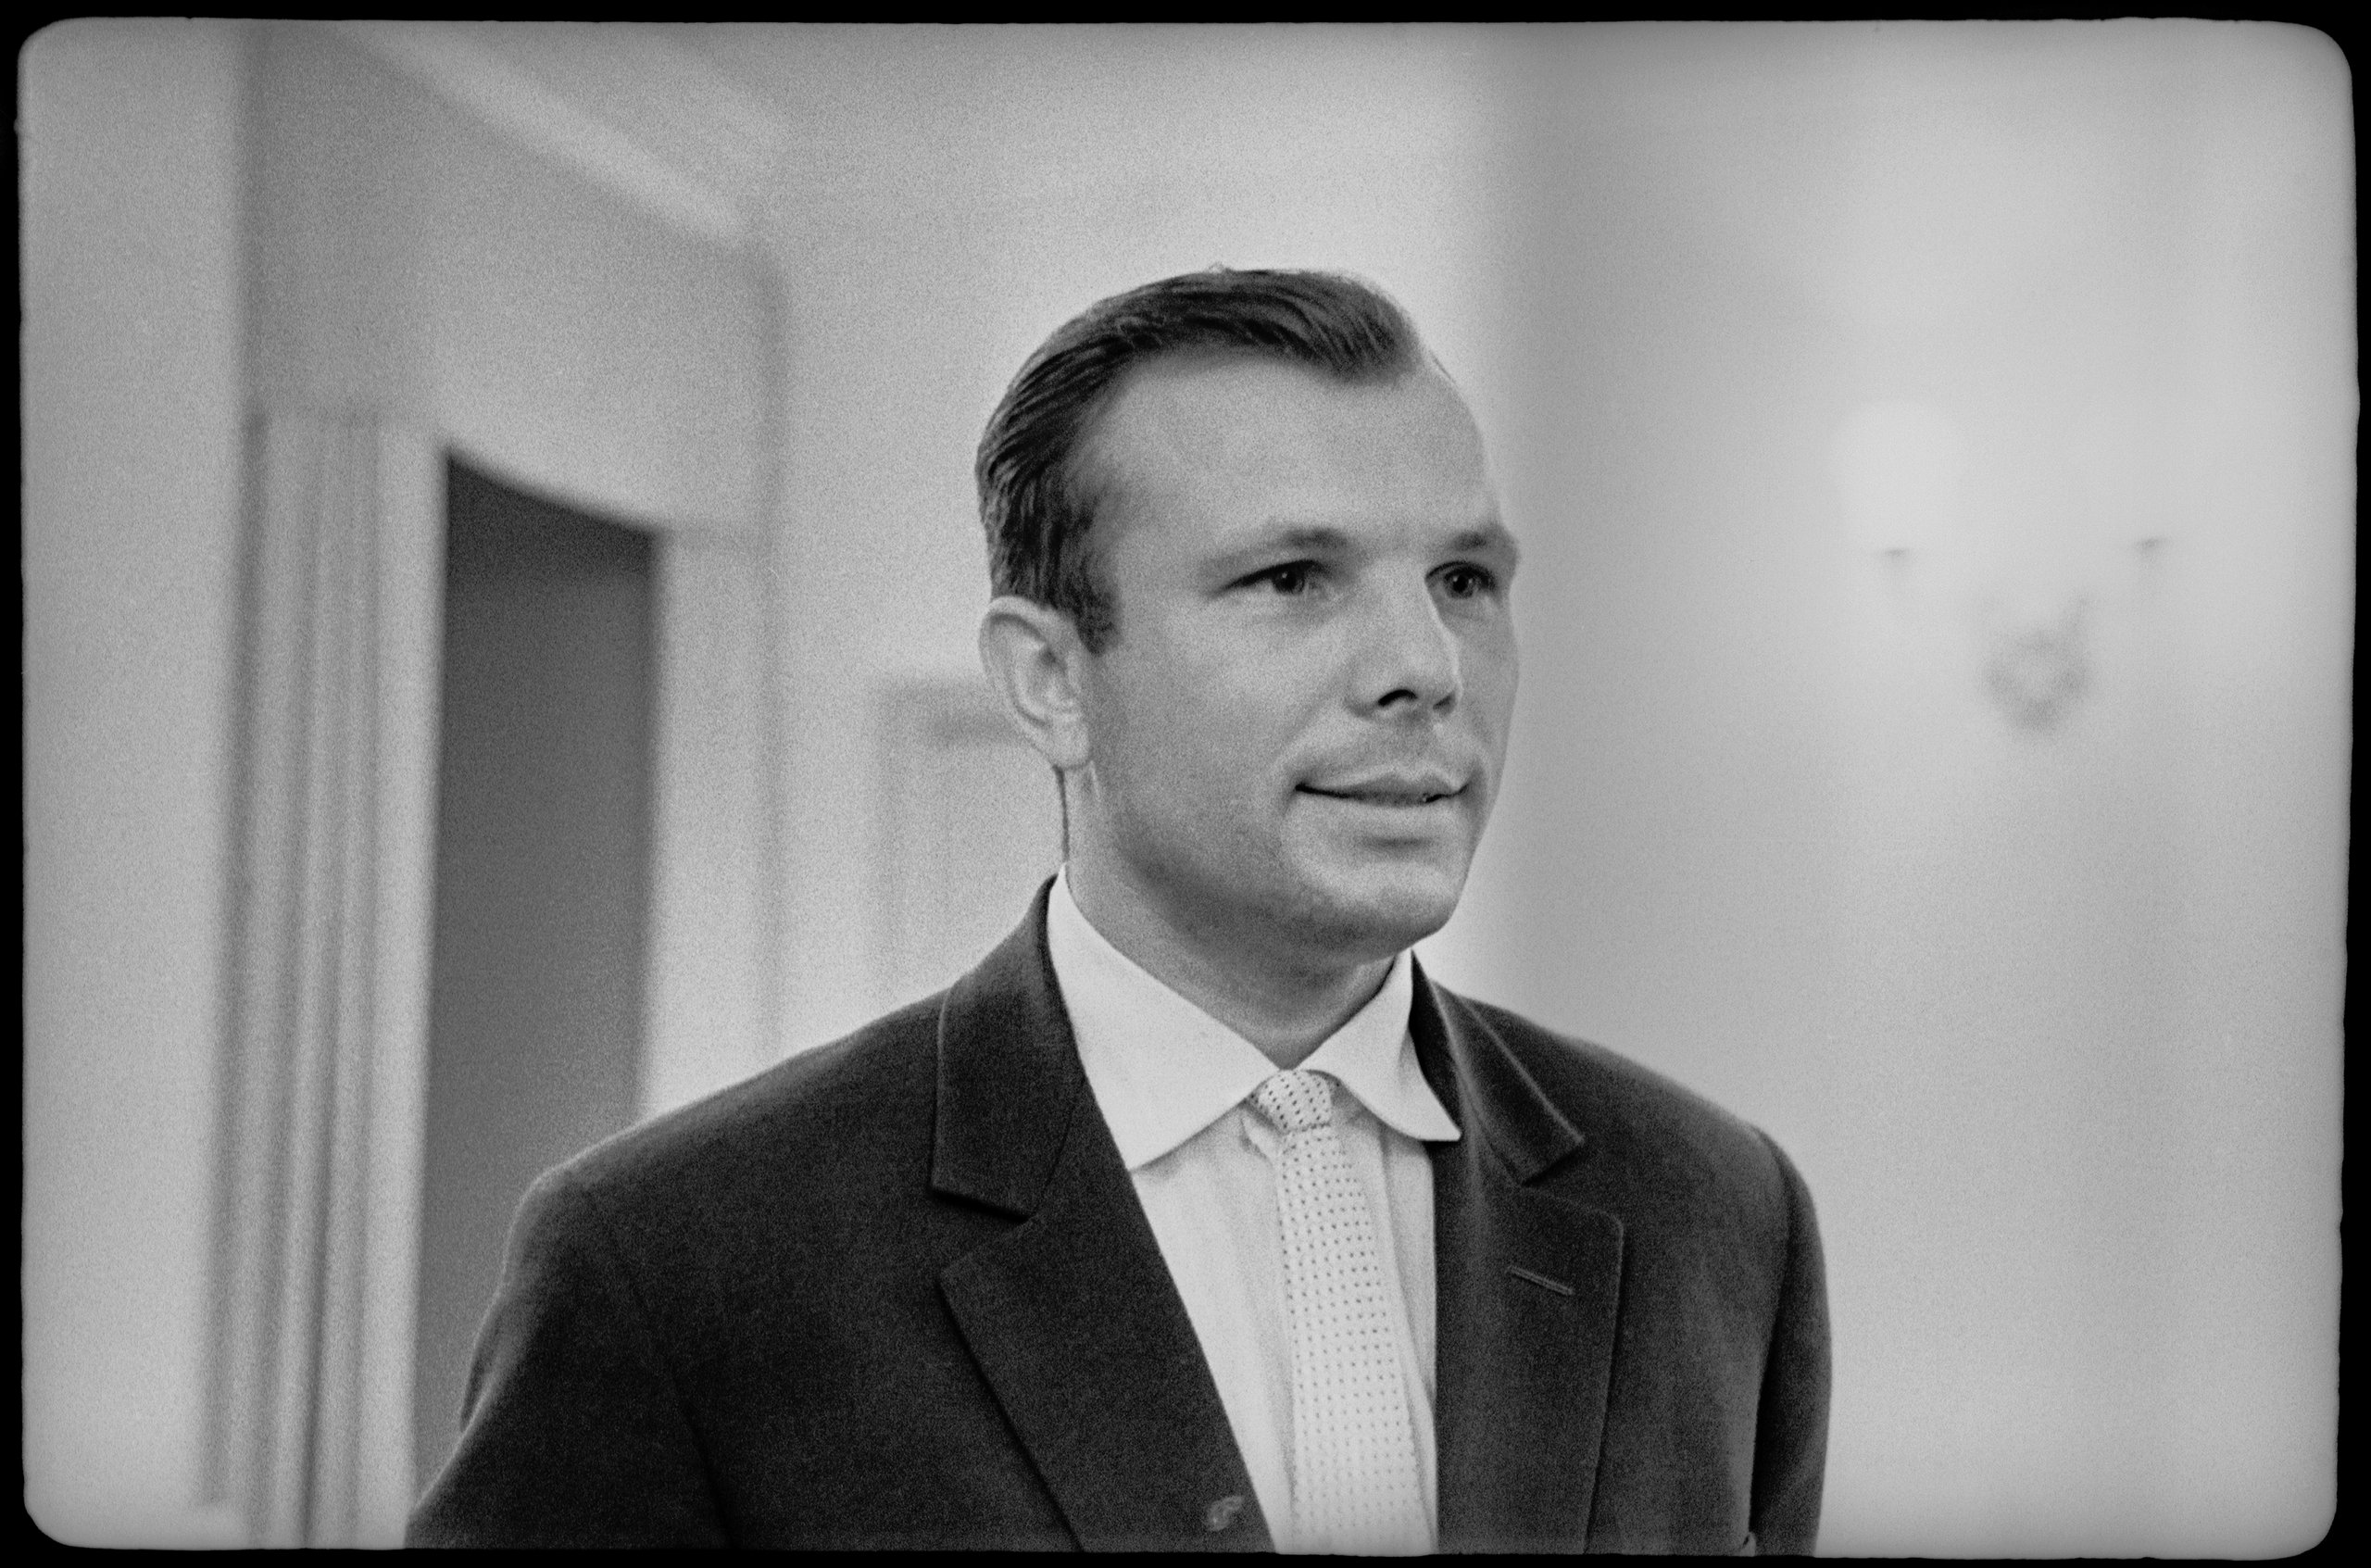 Photograph and negative of Cosmonaut Yuri Gagarin